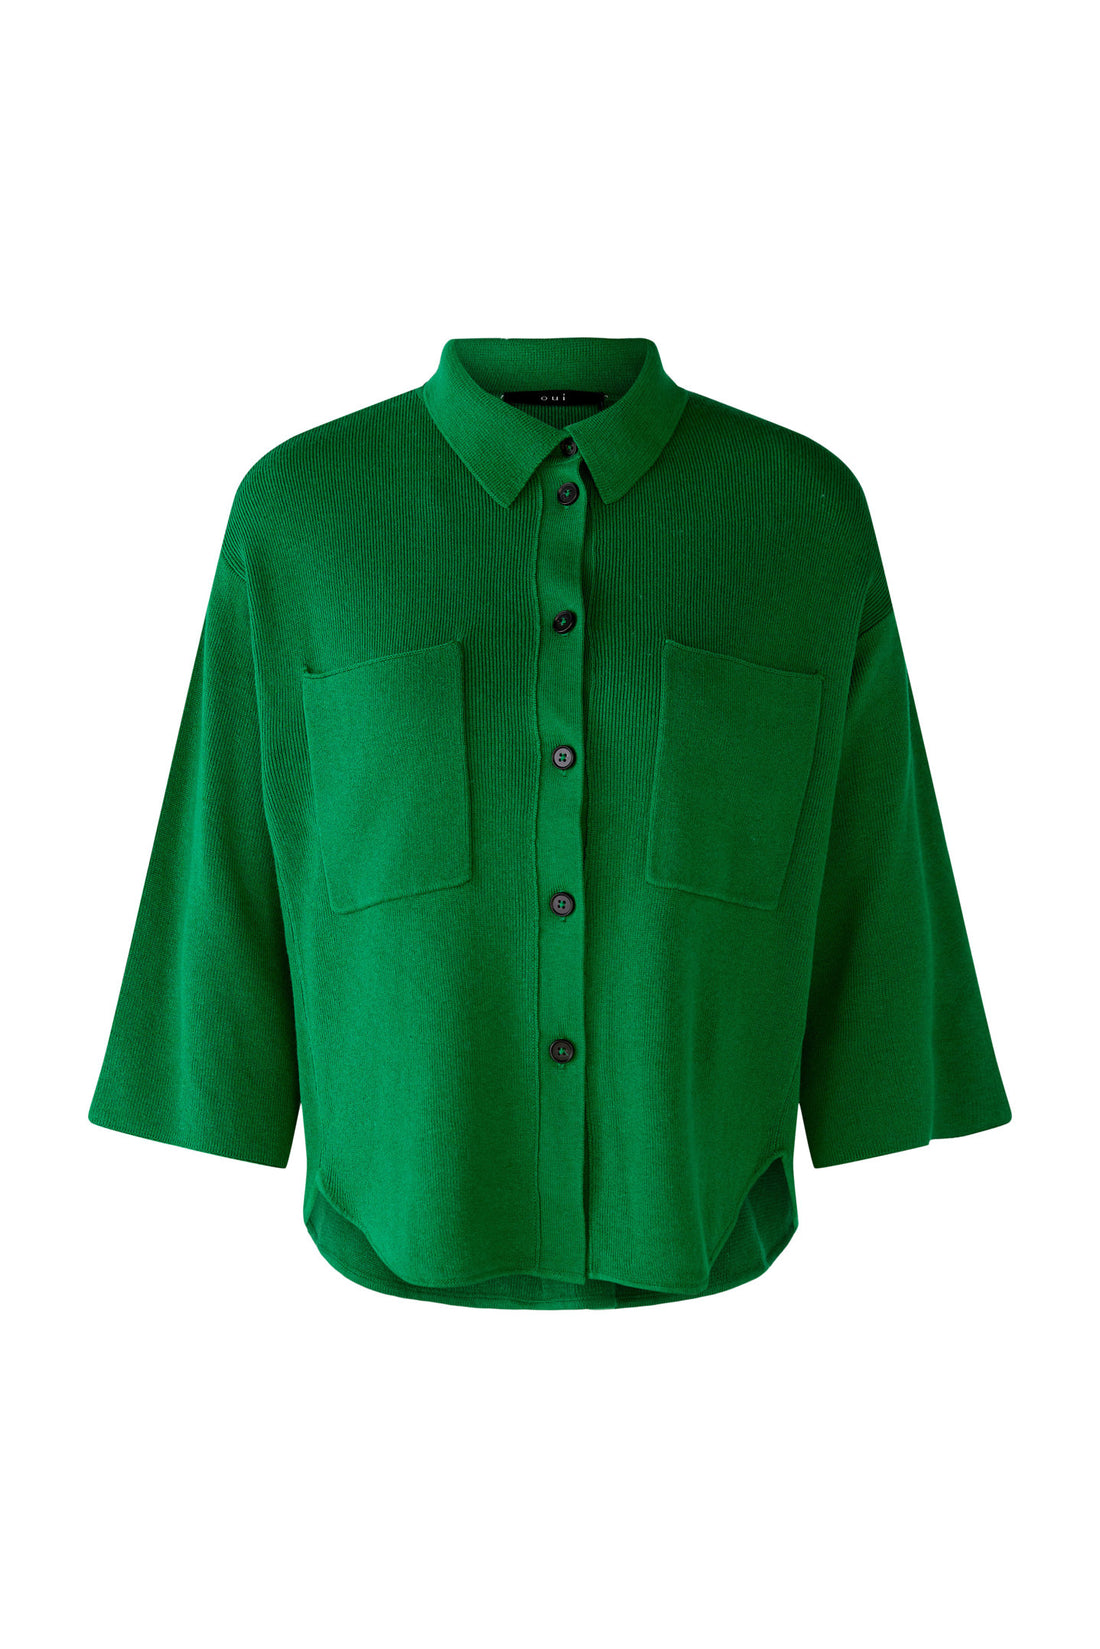 Green Short Sleeve Button Down_79613_6466_01